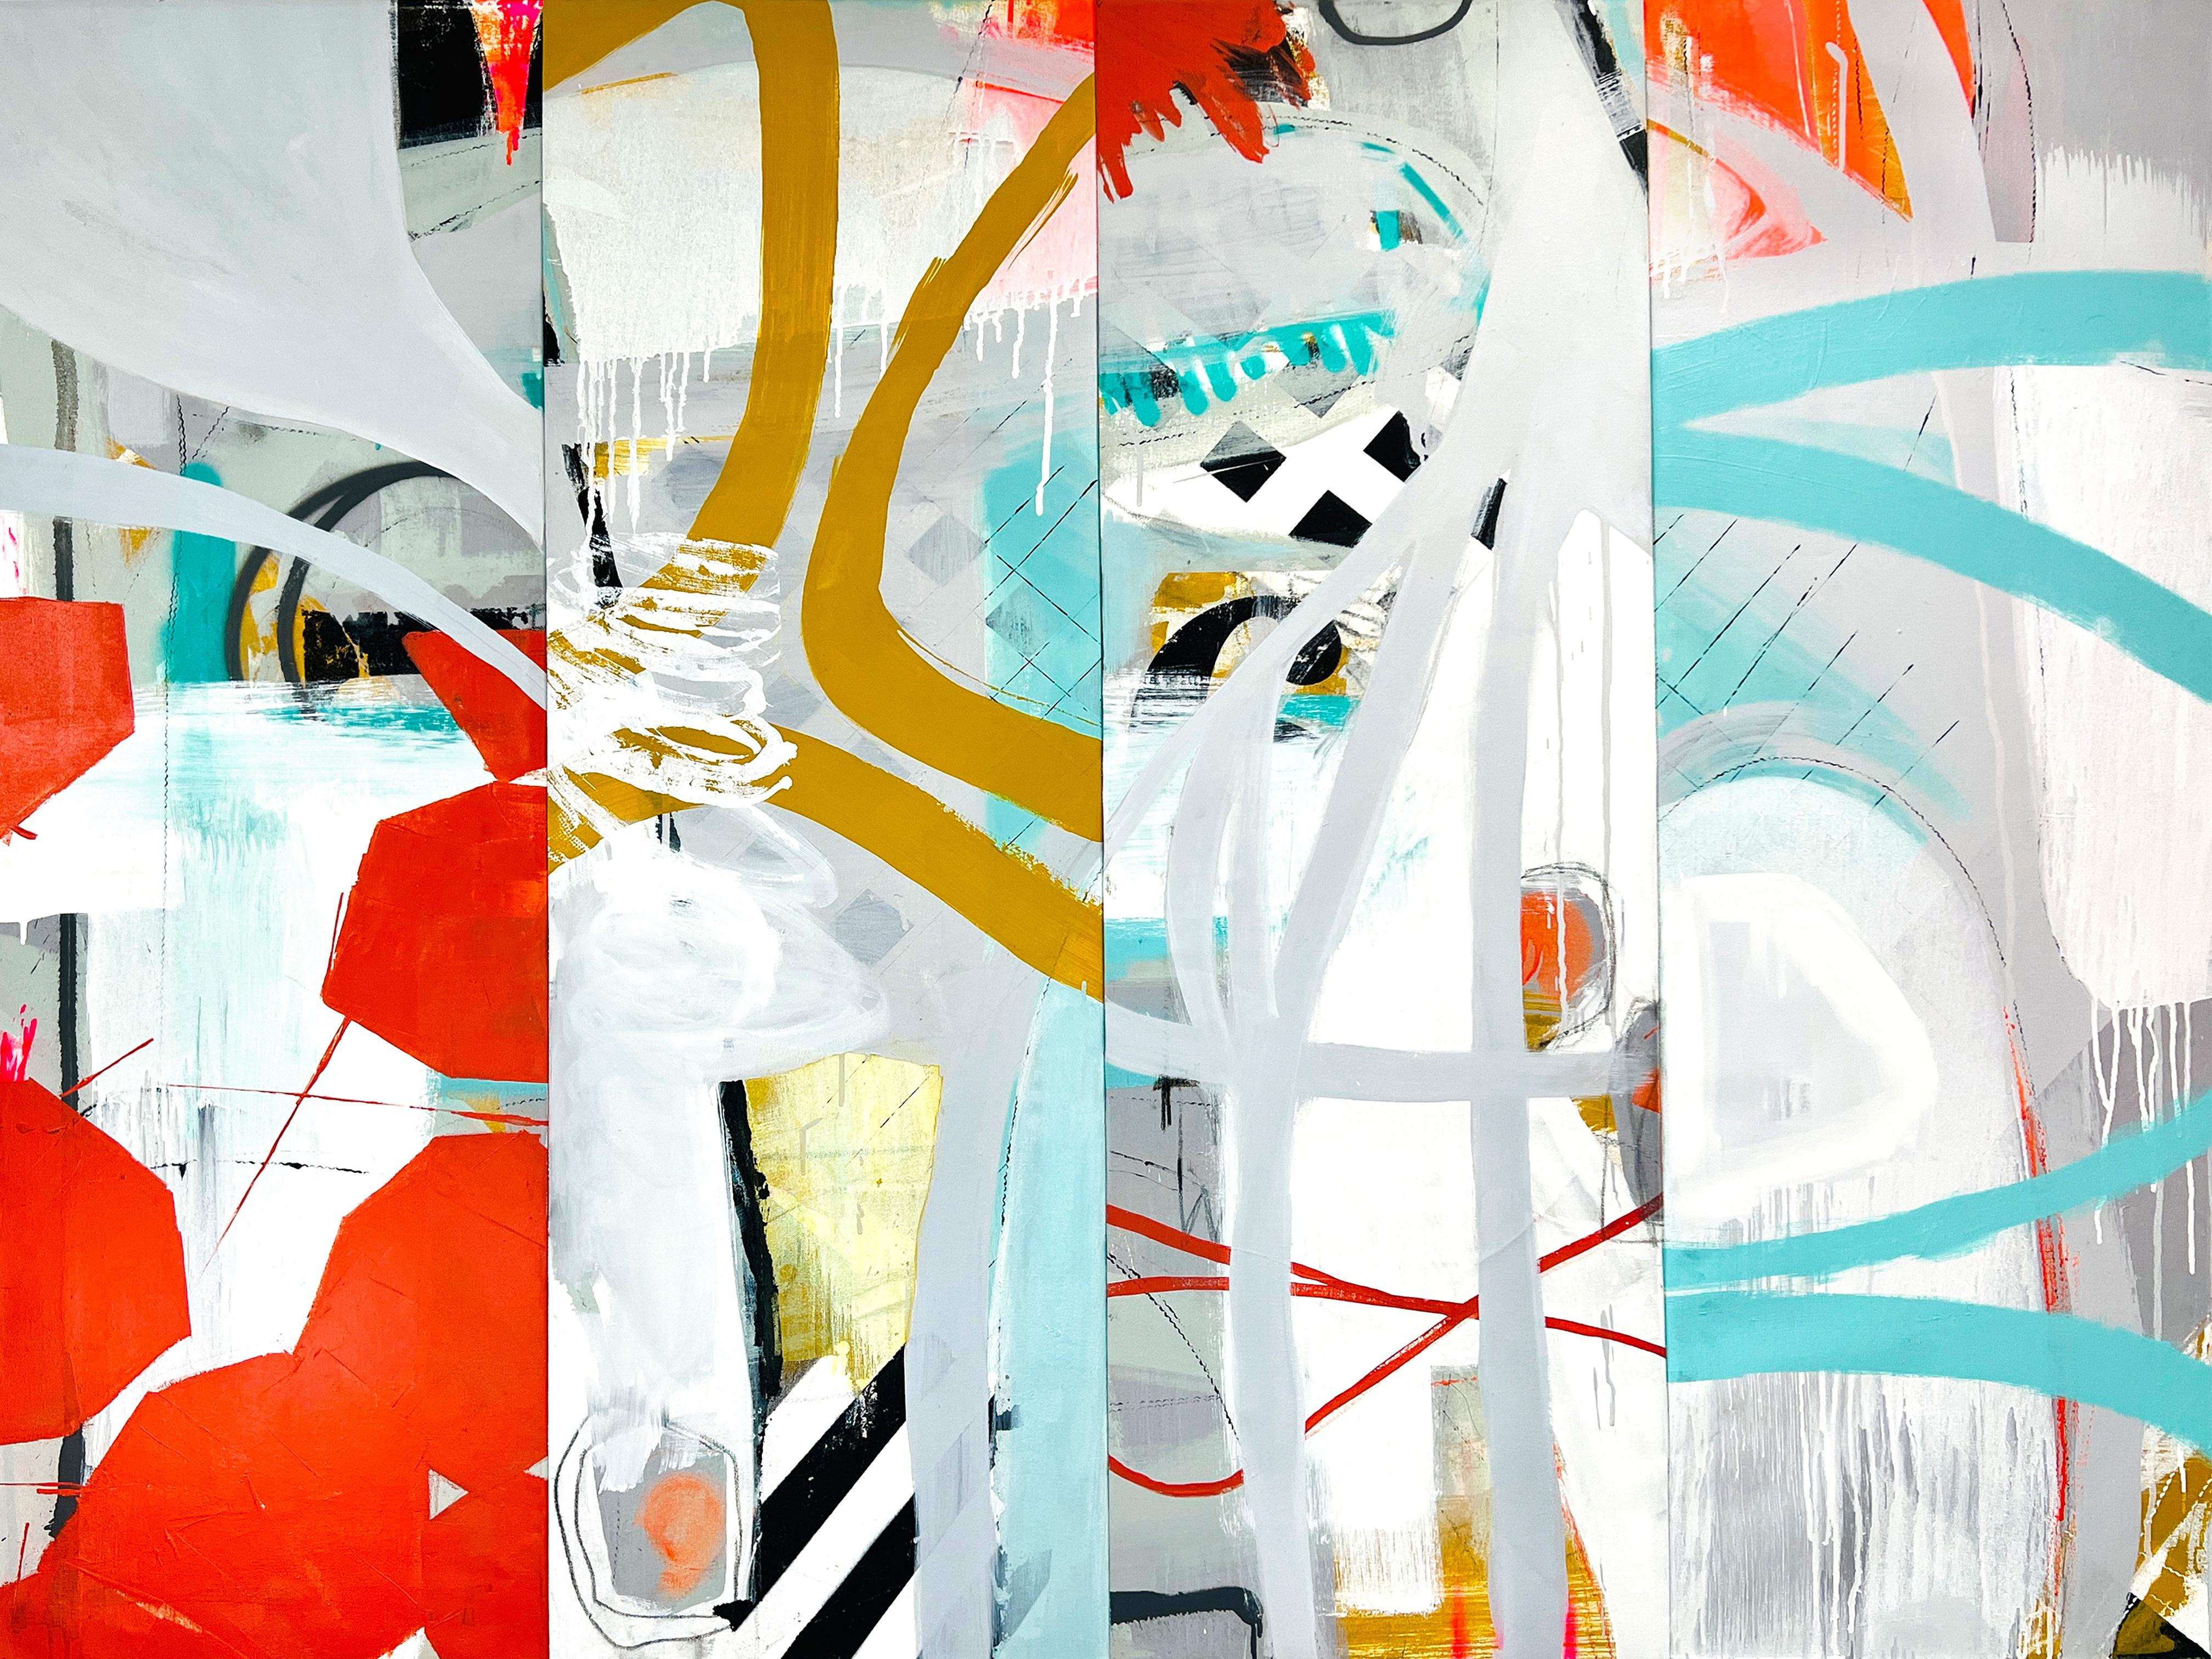 Abstract Painting Sarah Finucane - Stitch by Stitch, peinture originale contemporaine à motifs abstraits et lumineux, en collage